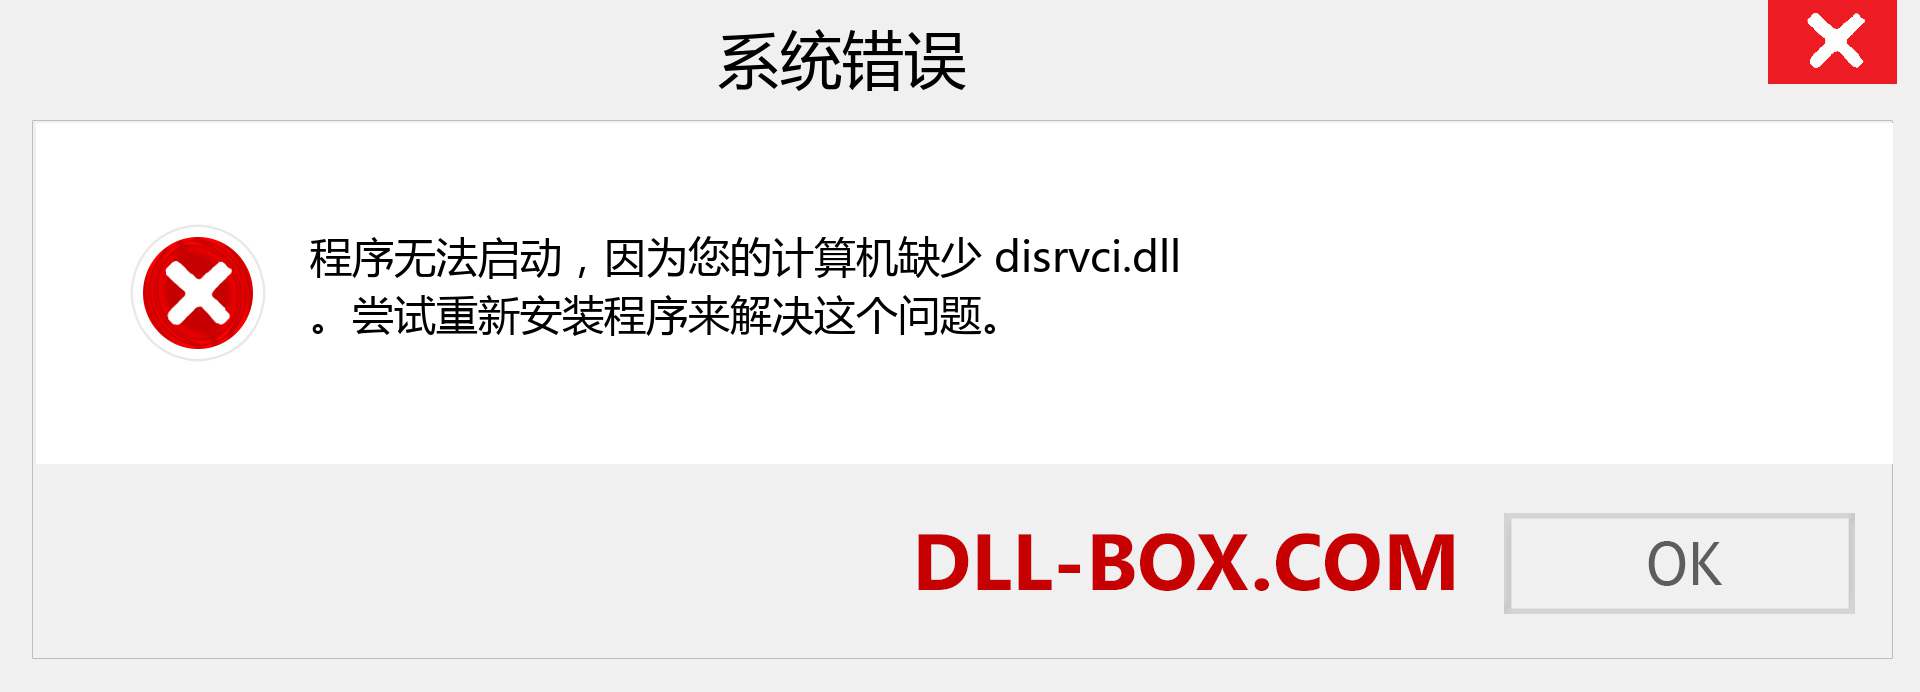 disrvci.dll 文件丢失？。 适用于 Windows 7、8、10 的下载 - 修复 Windows、照片、图像上的 disrvci dll 丢失错误